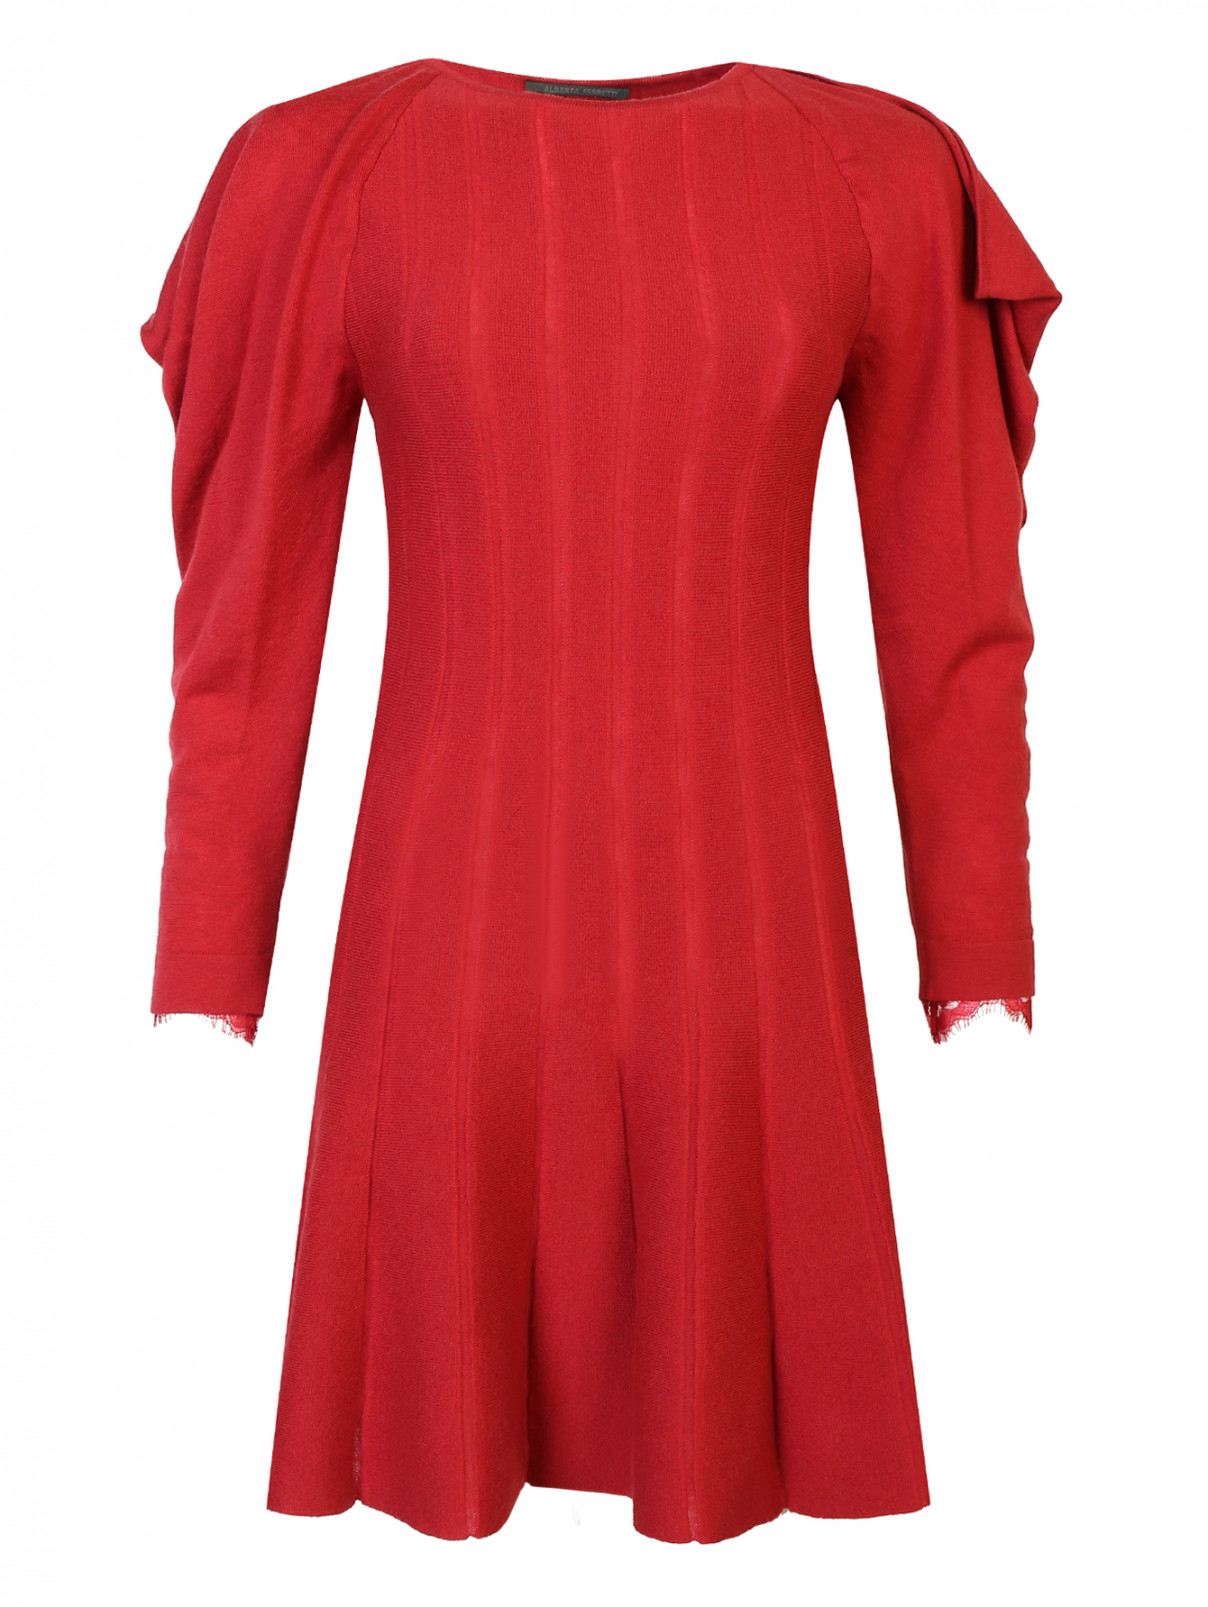 Платье из шерсти с объемными рукавами Alberta Ferretti  –  Общий вид  – Цвет:  Красный